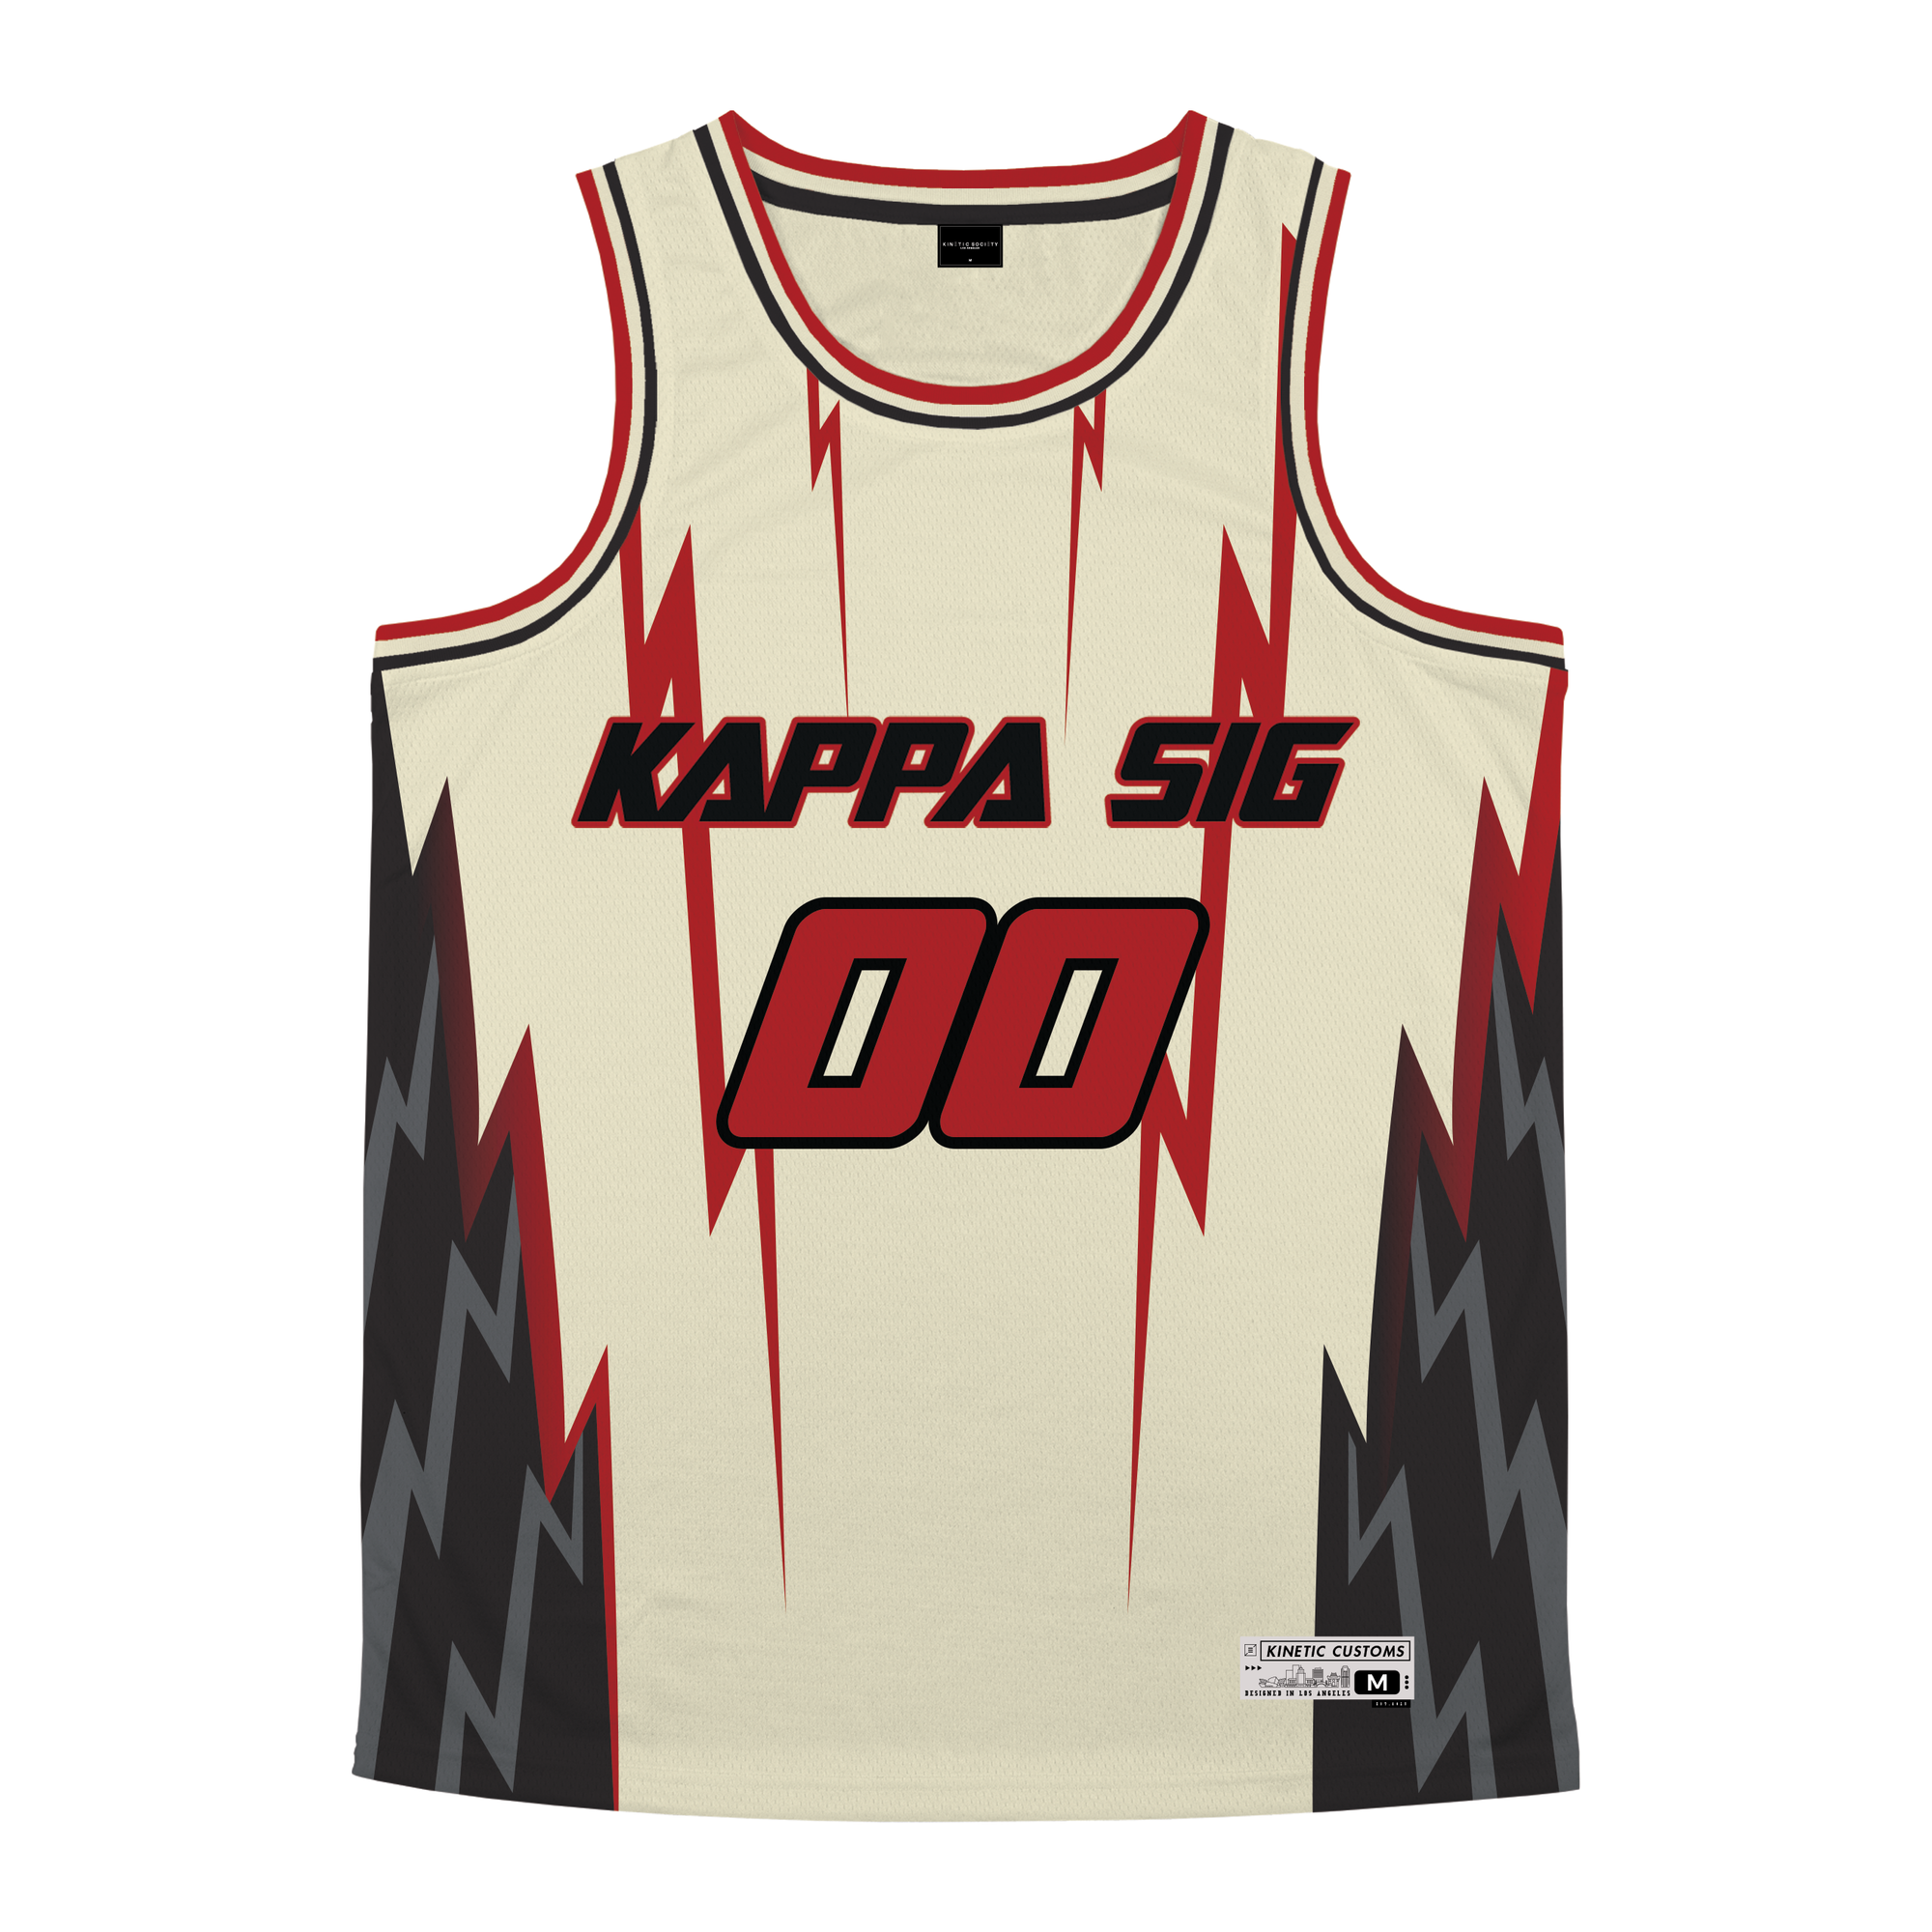 Kappa Sigma - Rapture Basketball Jersey